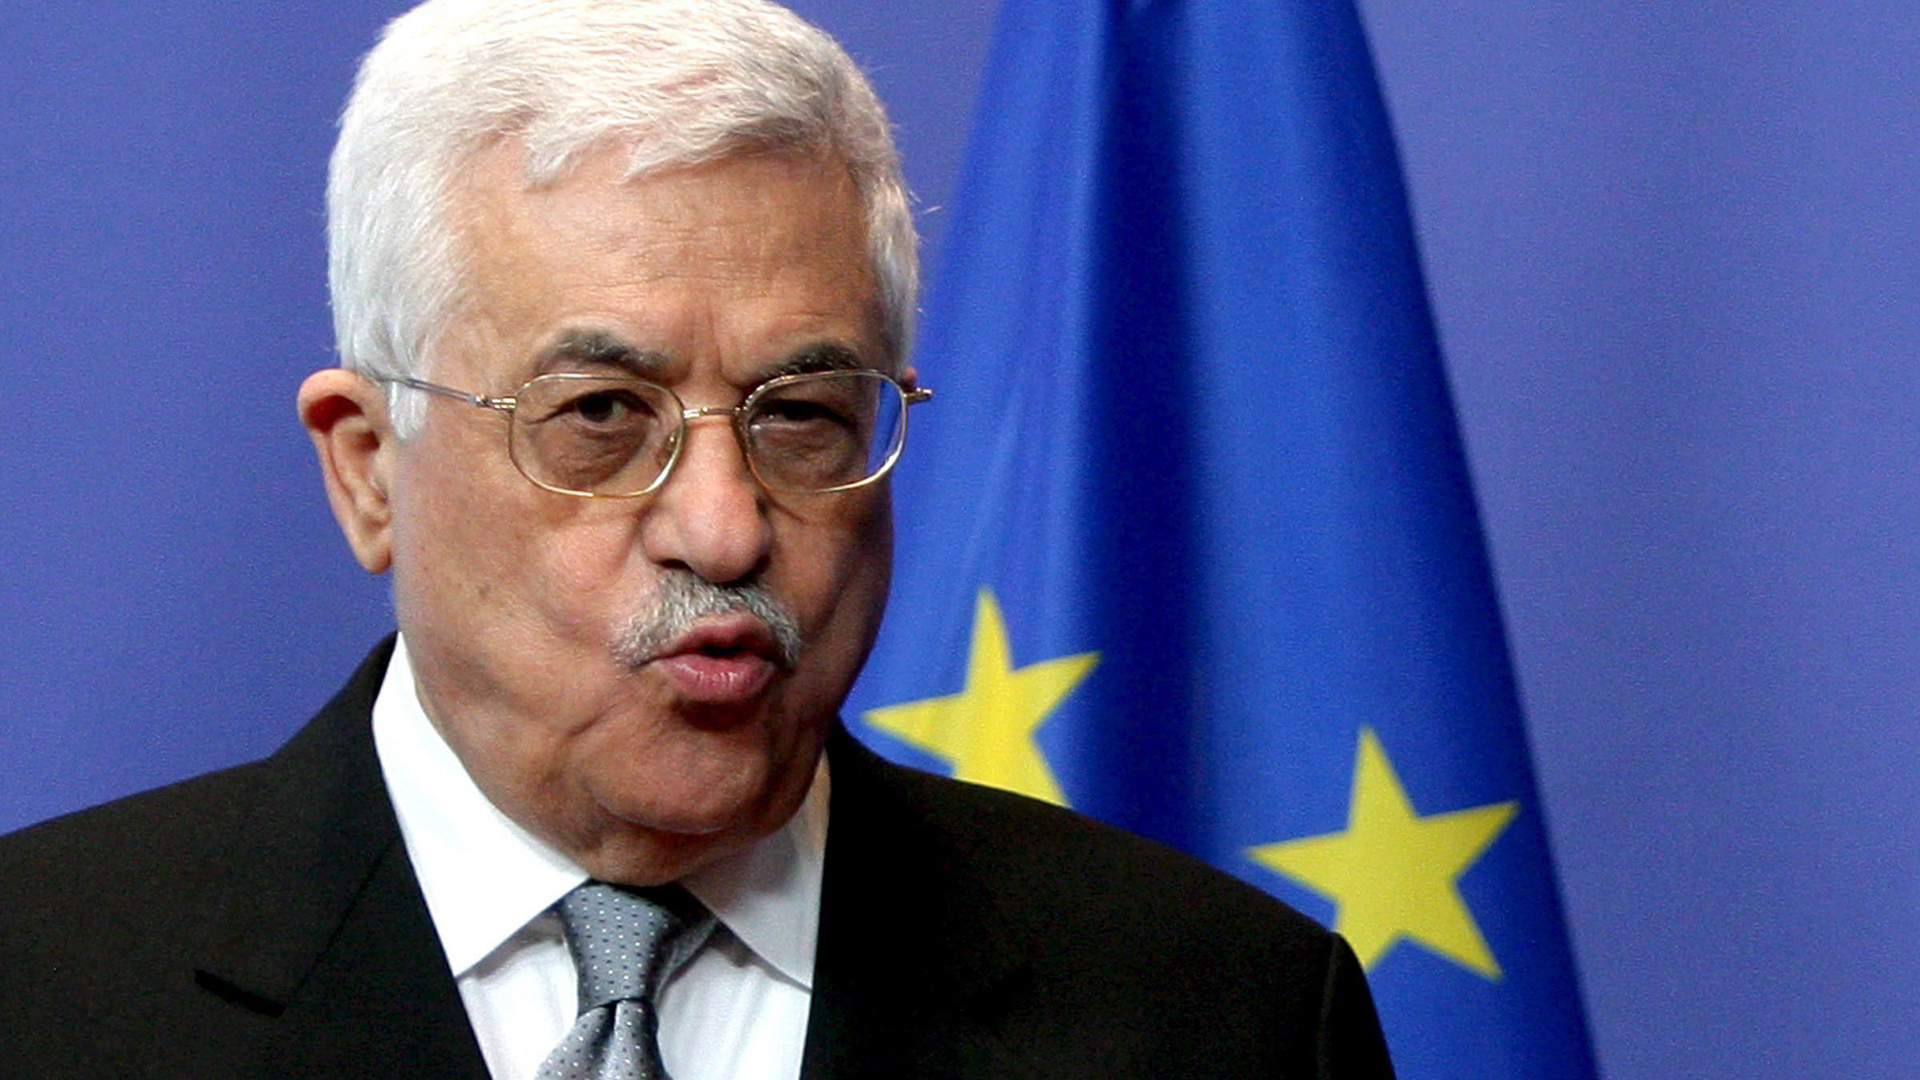 Palästinenserpräsident Abbas spricht vor einer EU-Fahne | picture-alliance/ dpa